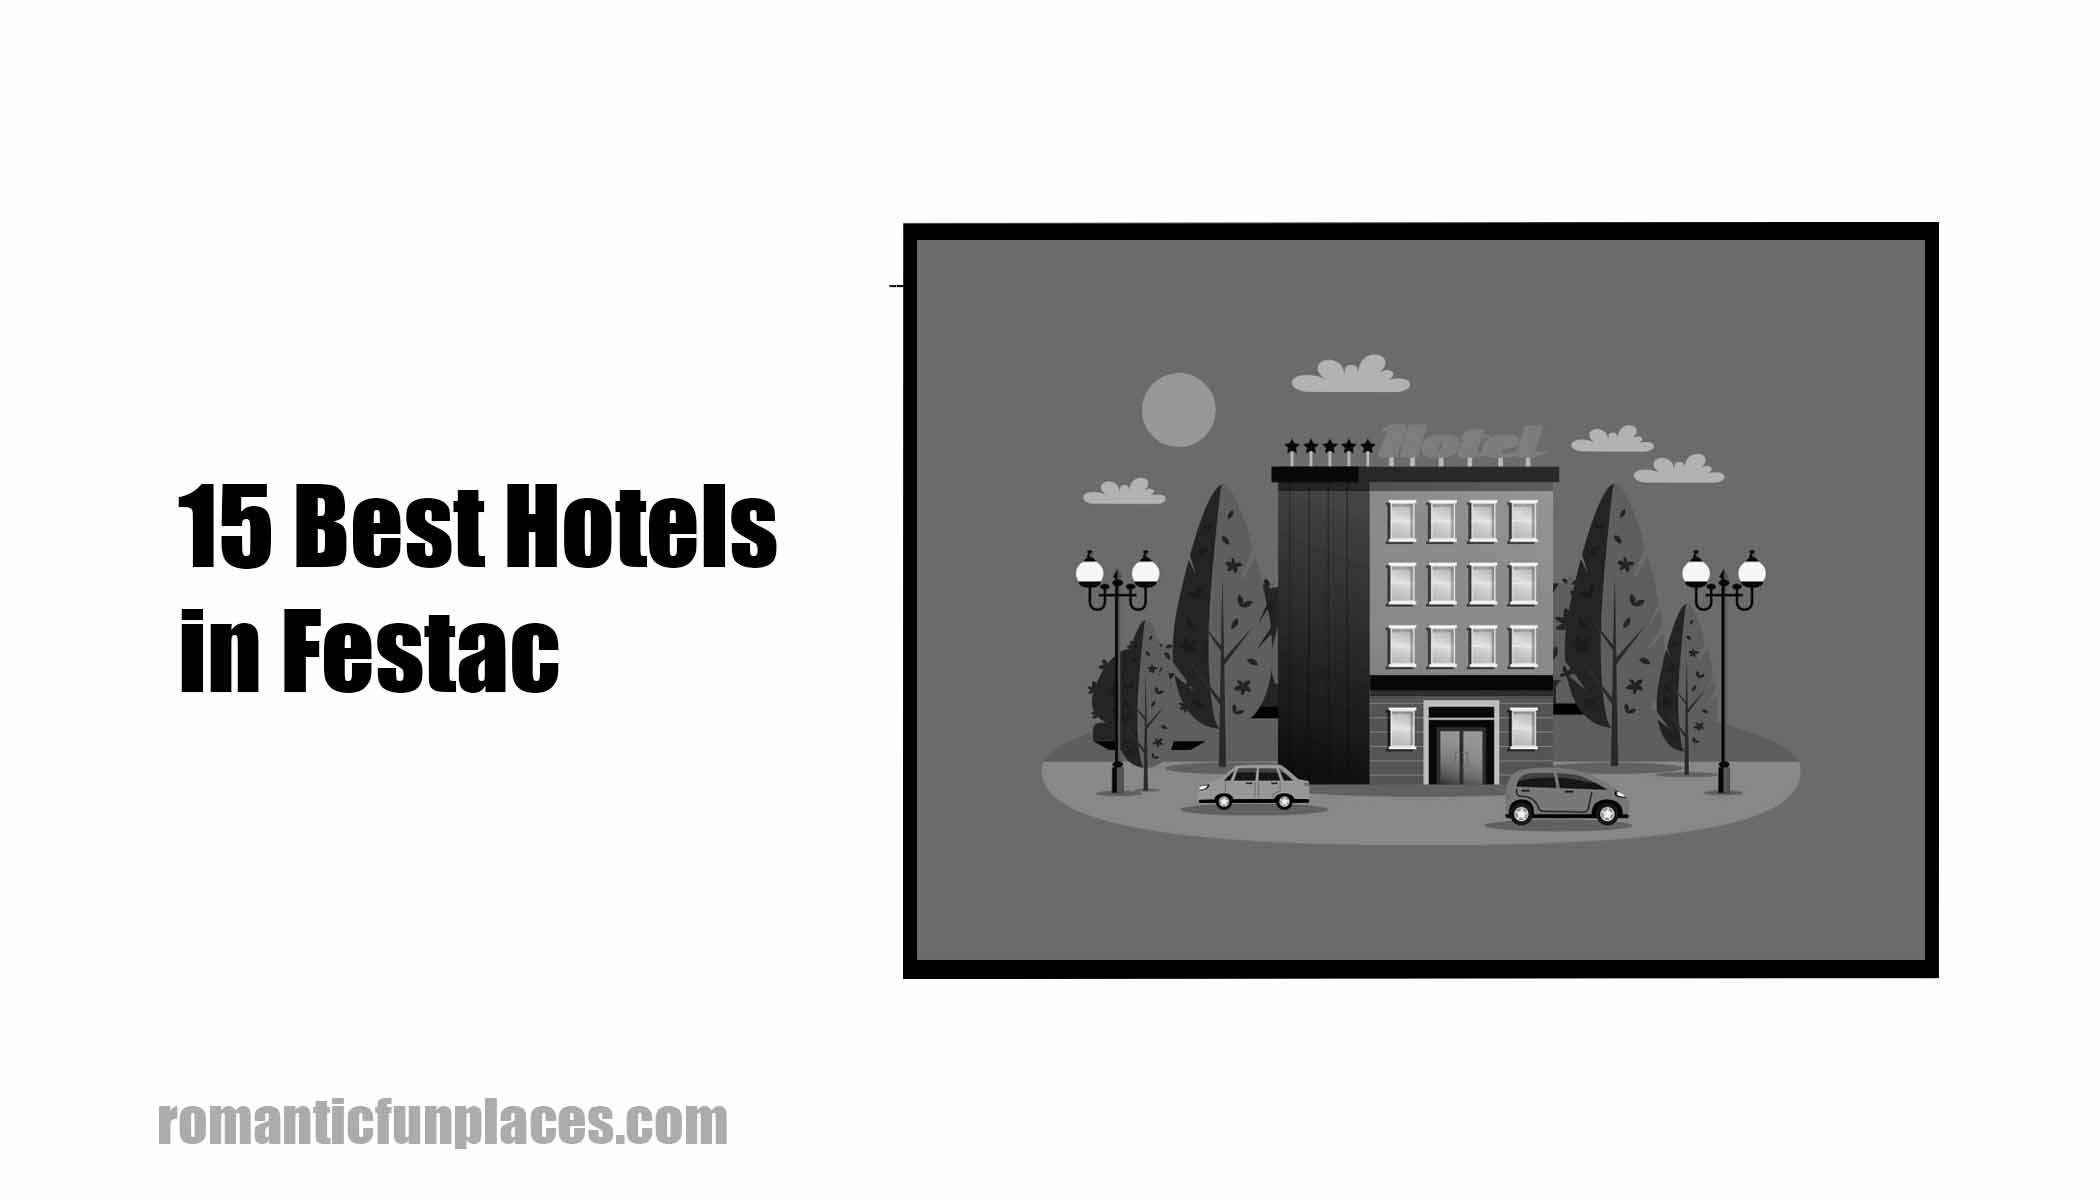 15 Best Hotels in Festac